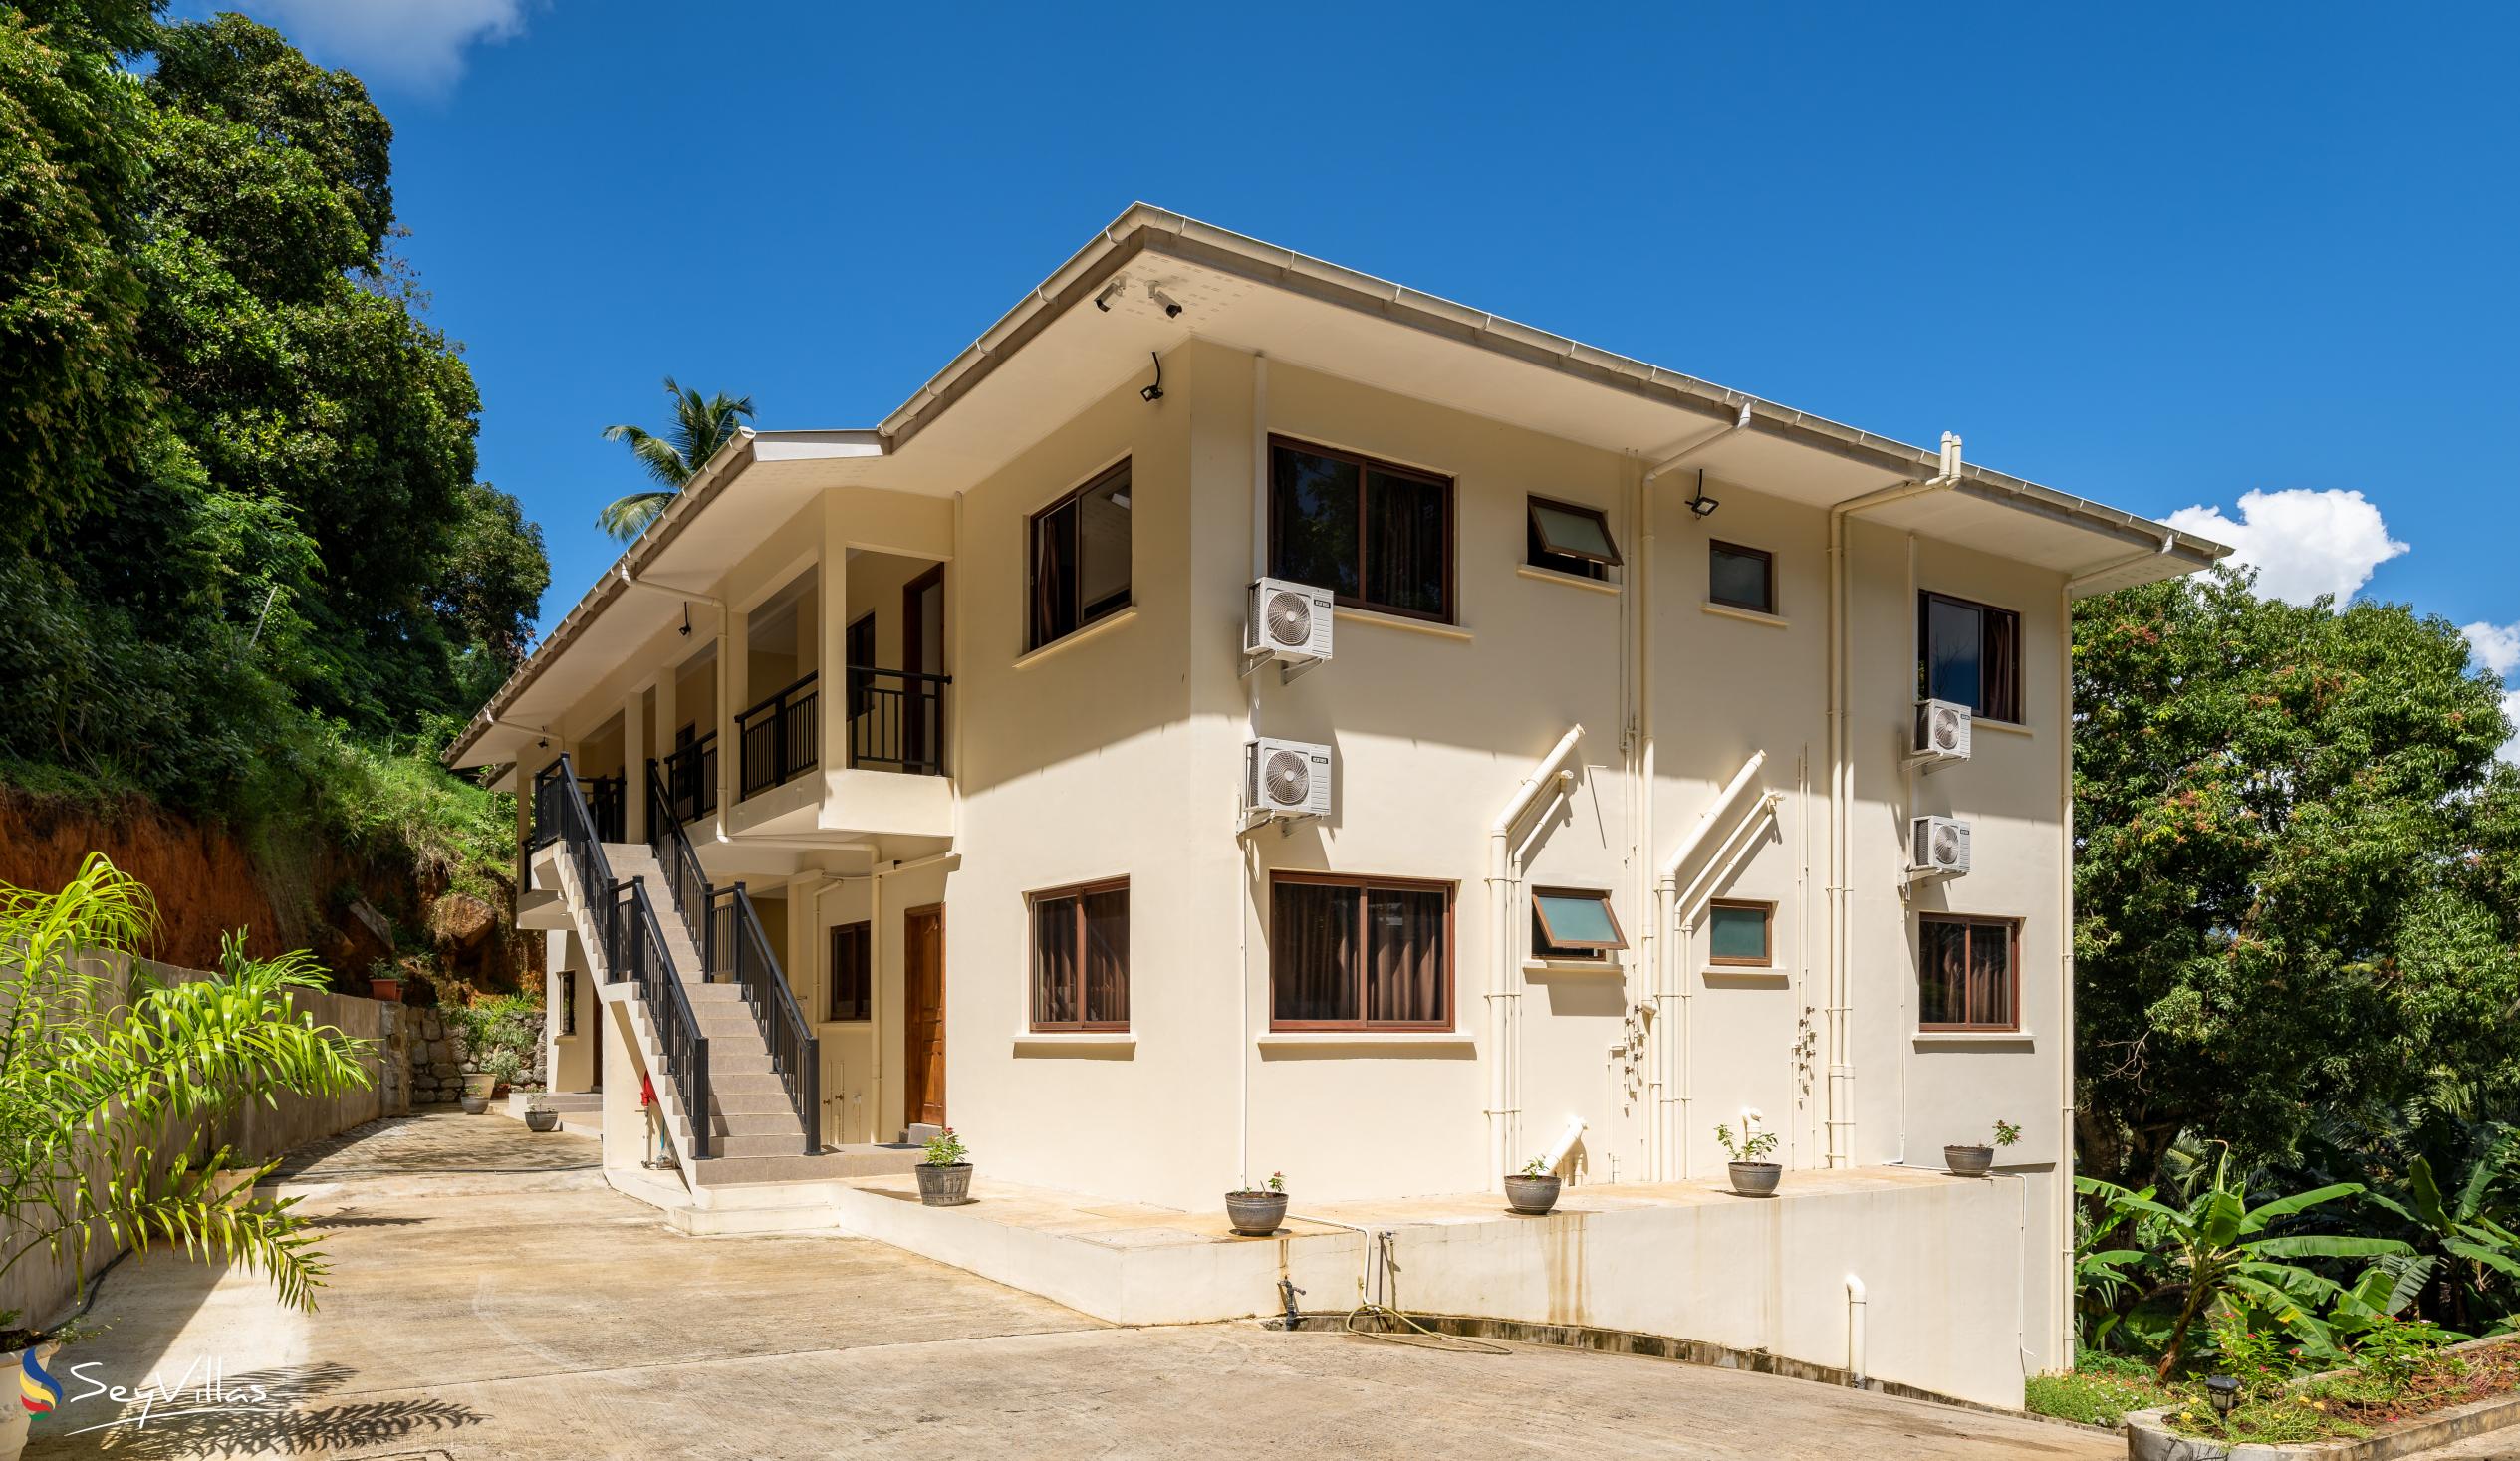 Foto 59: Kanasuk Self Catering Apartments - Aussenbereich - Mahé (Seychellen)